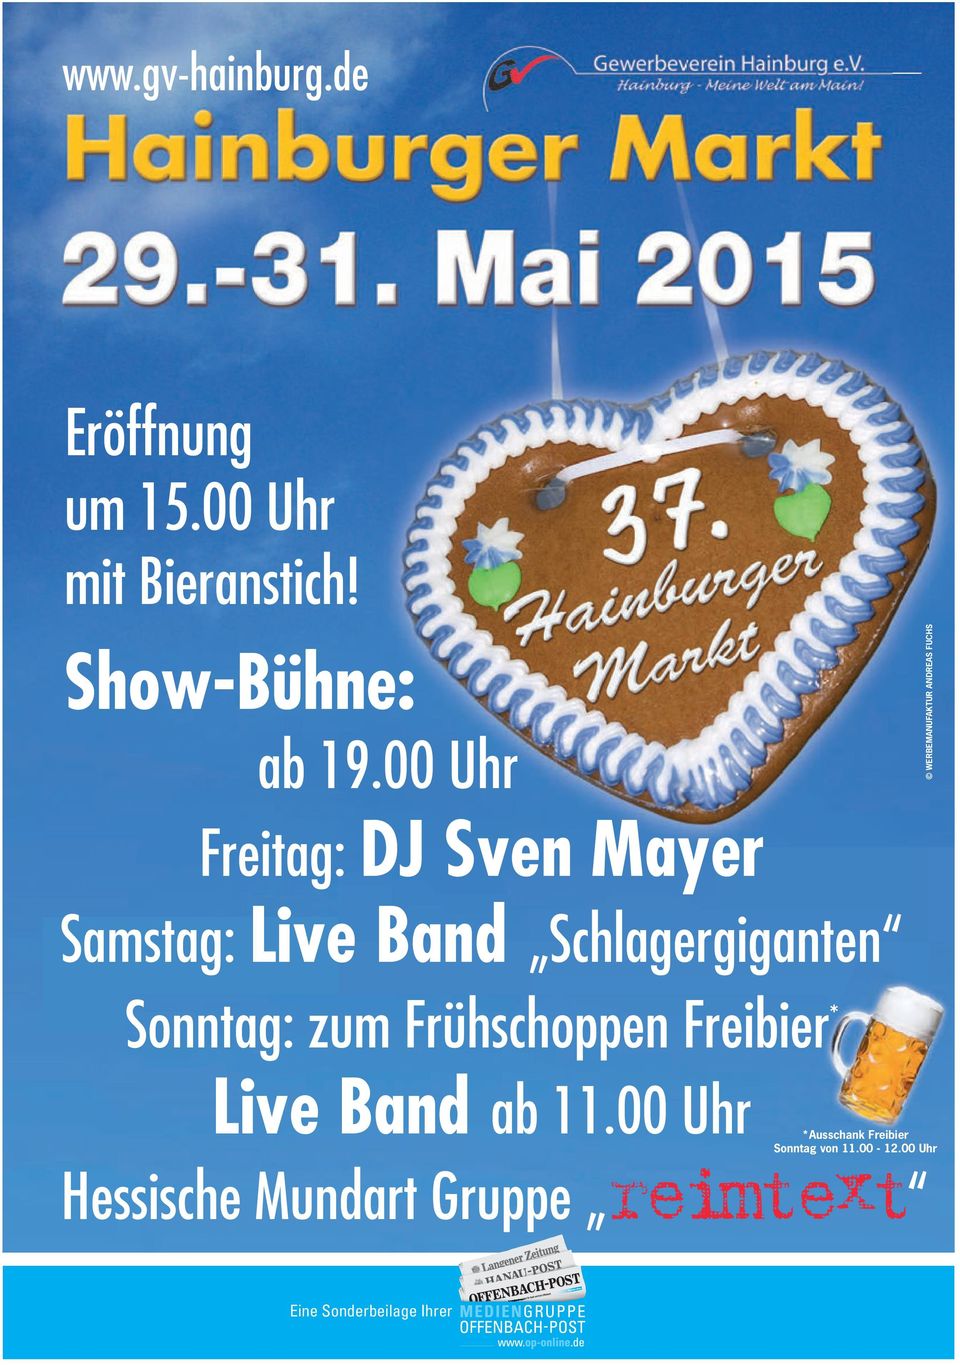 00 Uhr Freitag: DJ Sven Mayer Samstag: Live Band Schlagergiganten Sonntag: zum